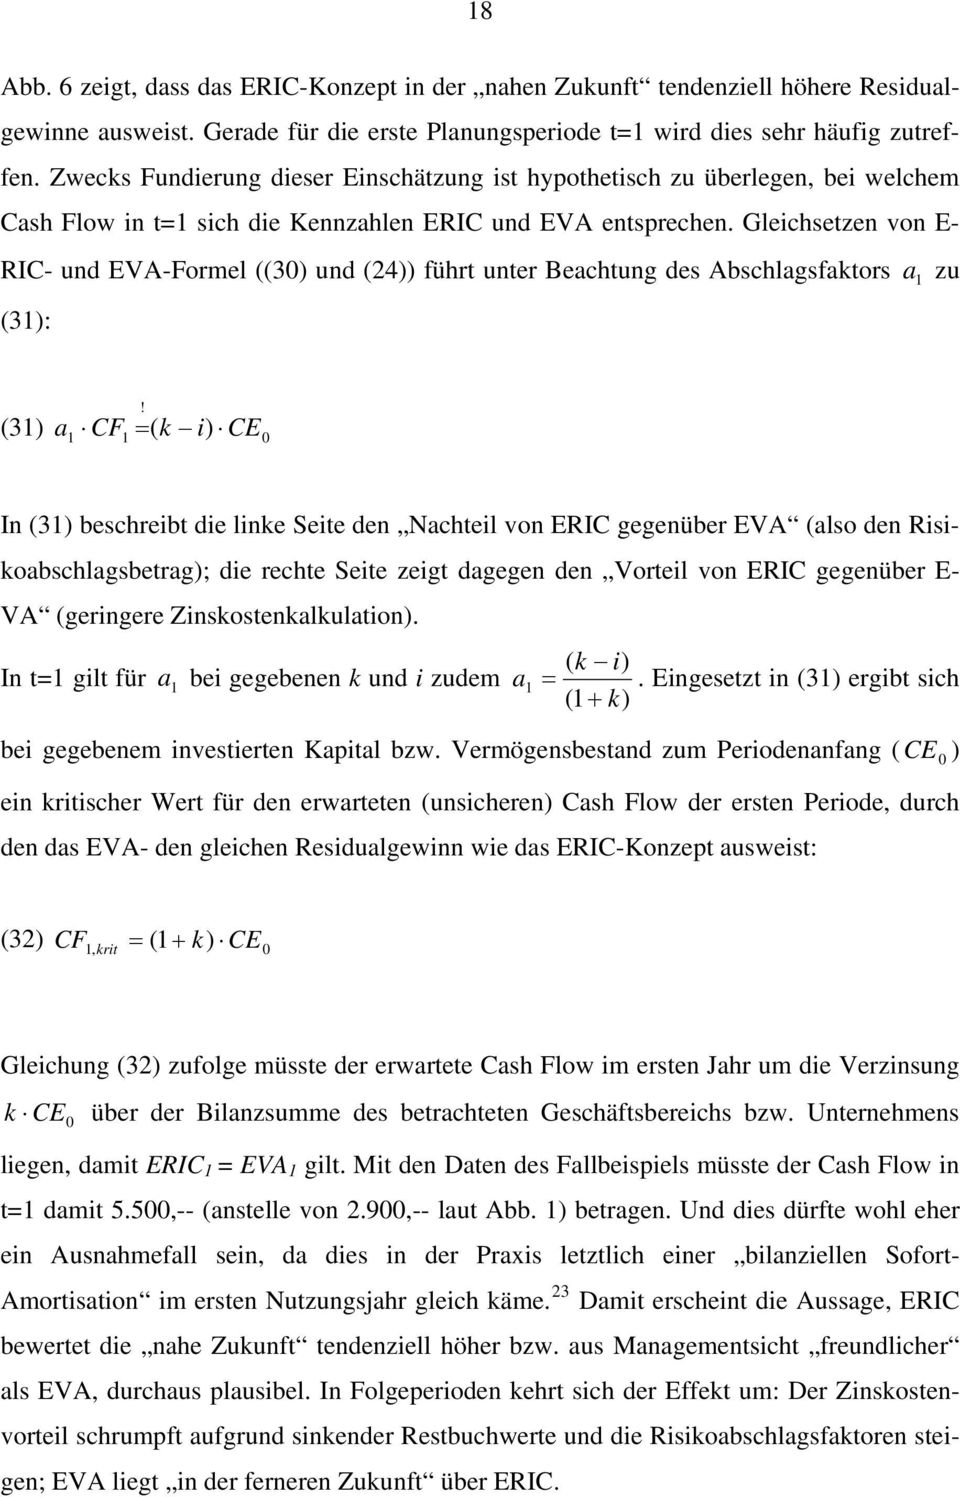 Gleichsezen von E- RIC- und EVA-Formel ((30) und (24)) führ uner Beachung des Abschlagsfakors (3): a zu (3) a = ( k i) CE0!